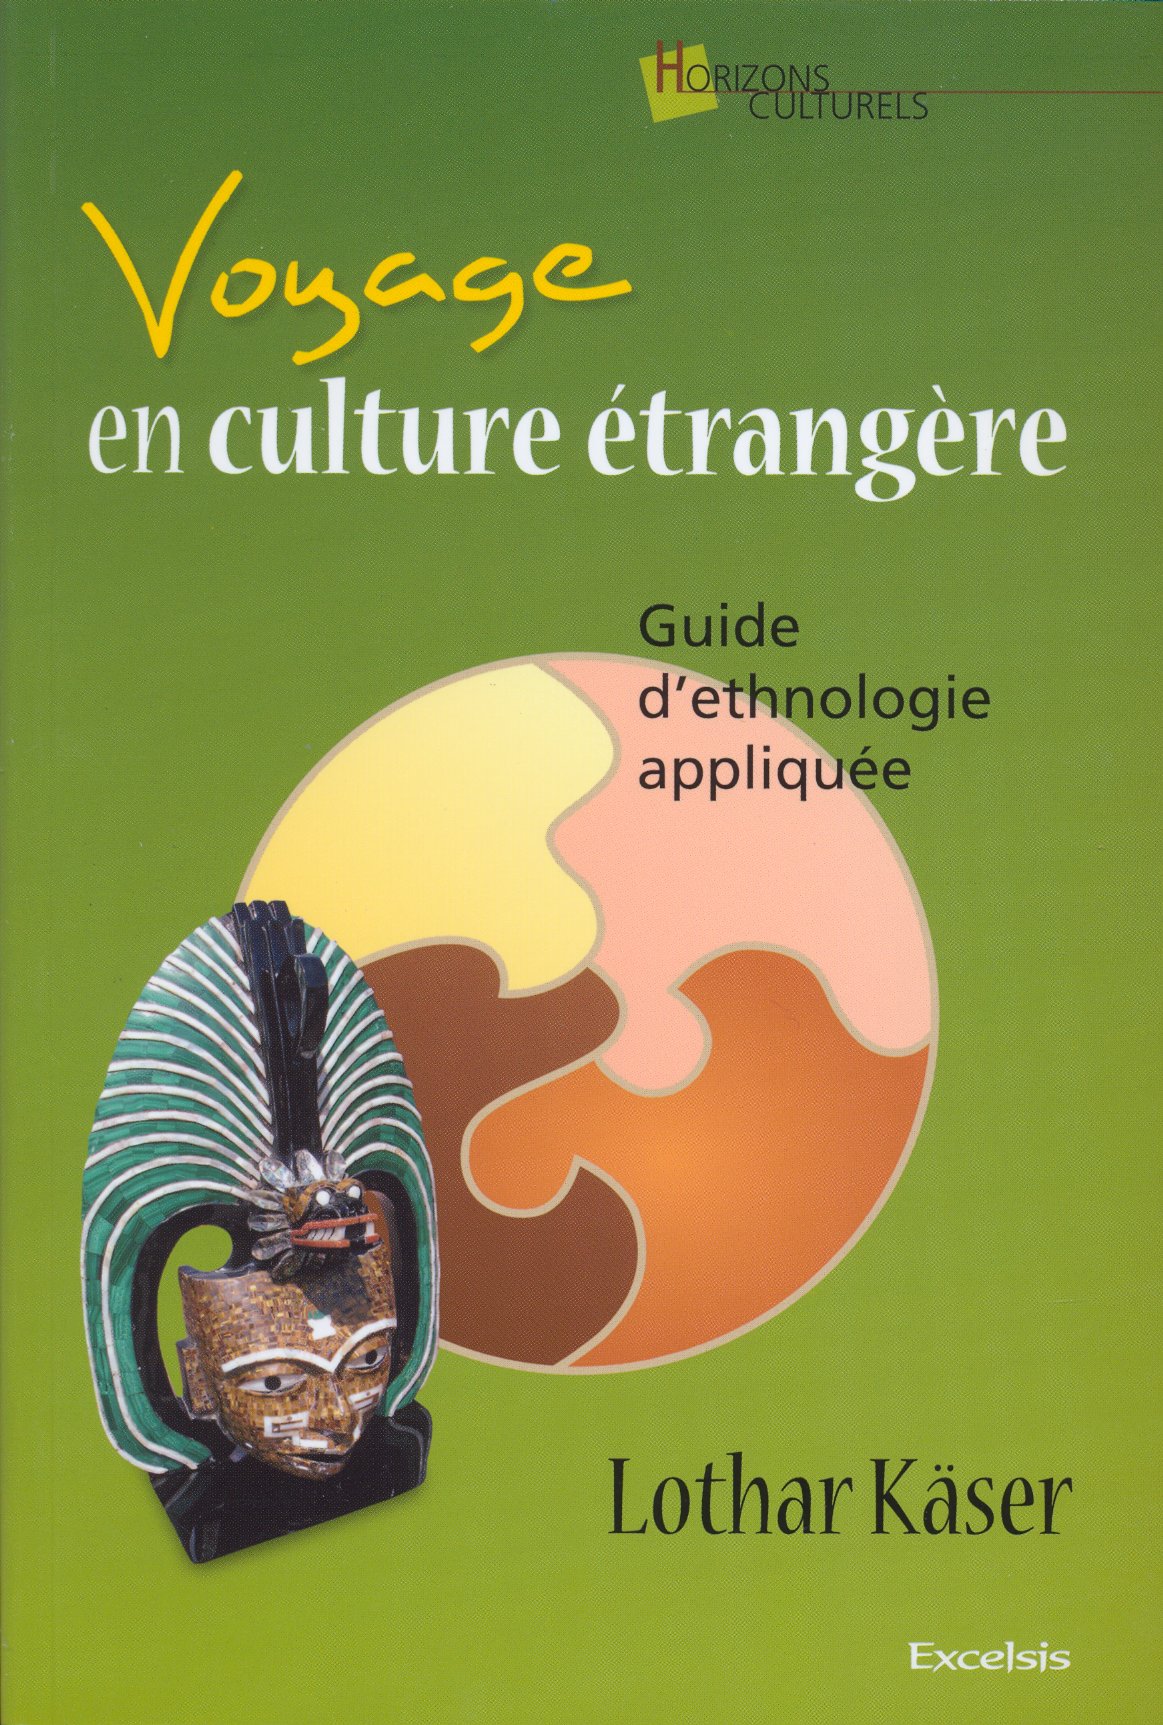 Voyage en culture étrangère - Guide d'ethnologie appliquée